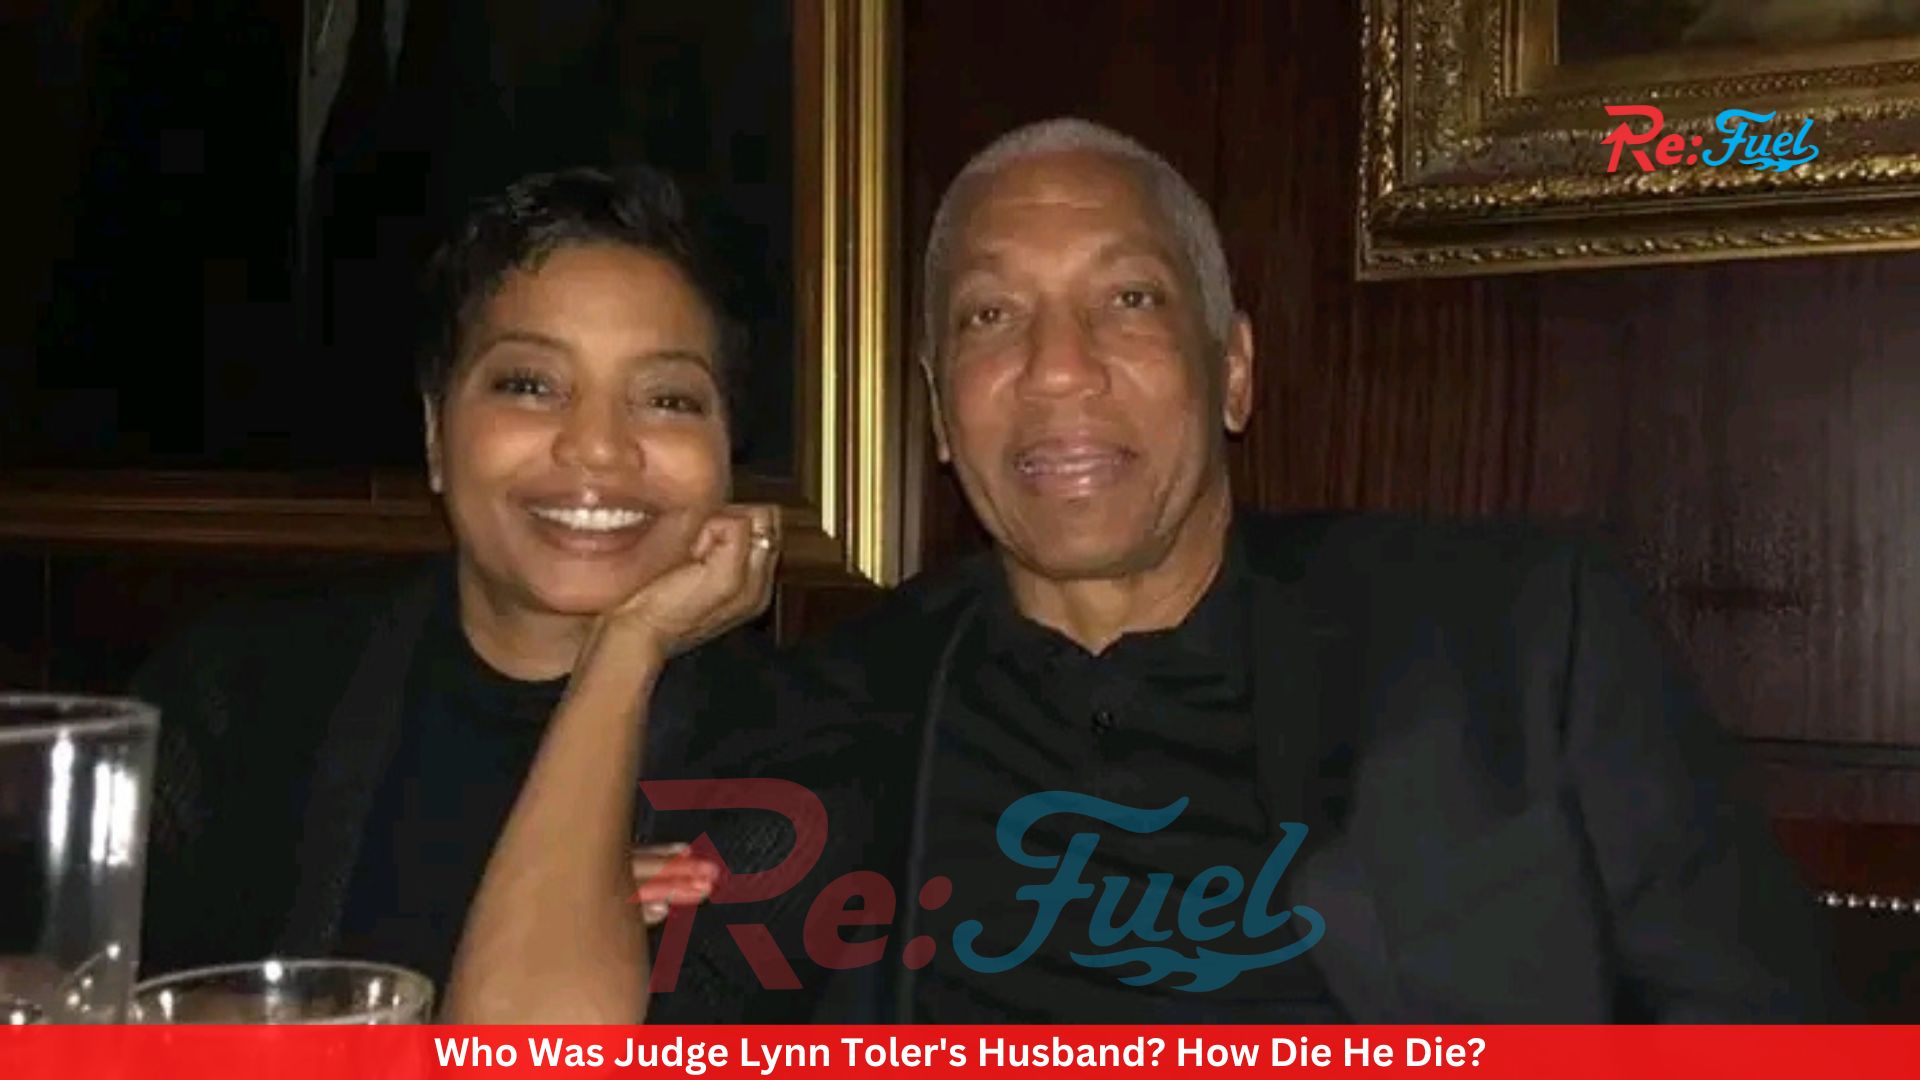 Who Was Judge Lynn Toler's Husband? How Die He Die?